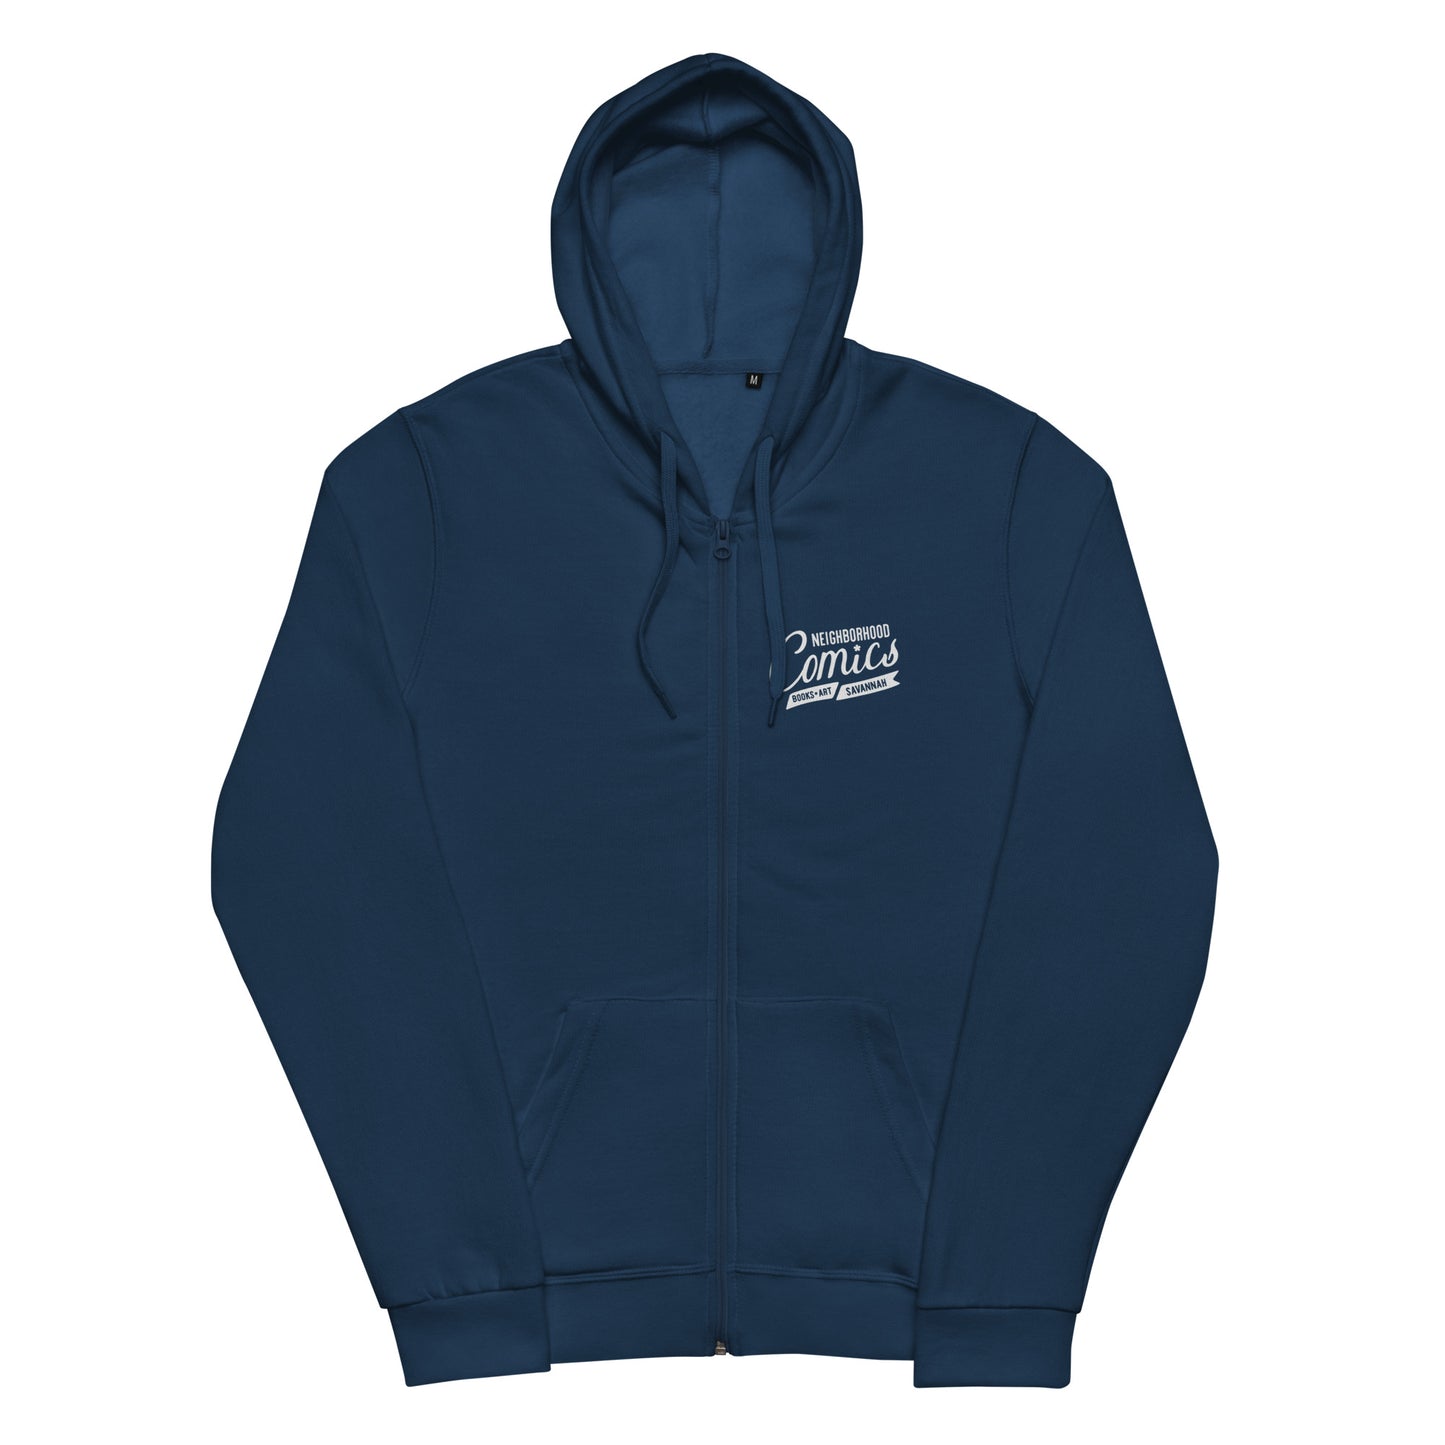 Neighborhood Comics Unisex basic zip hoodie